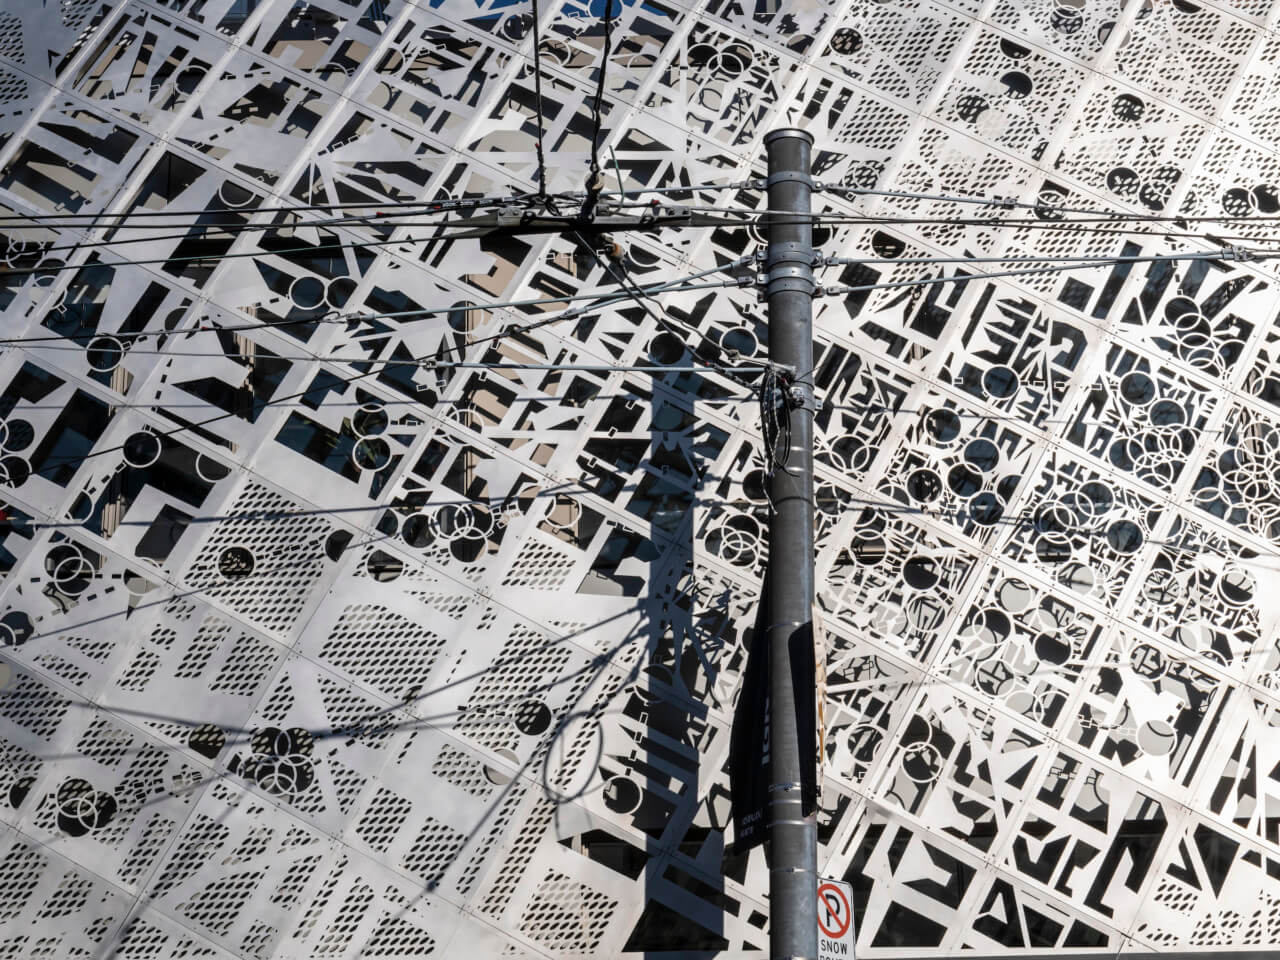 A laser map cut into a steel facade